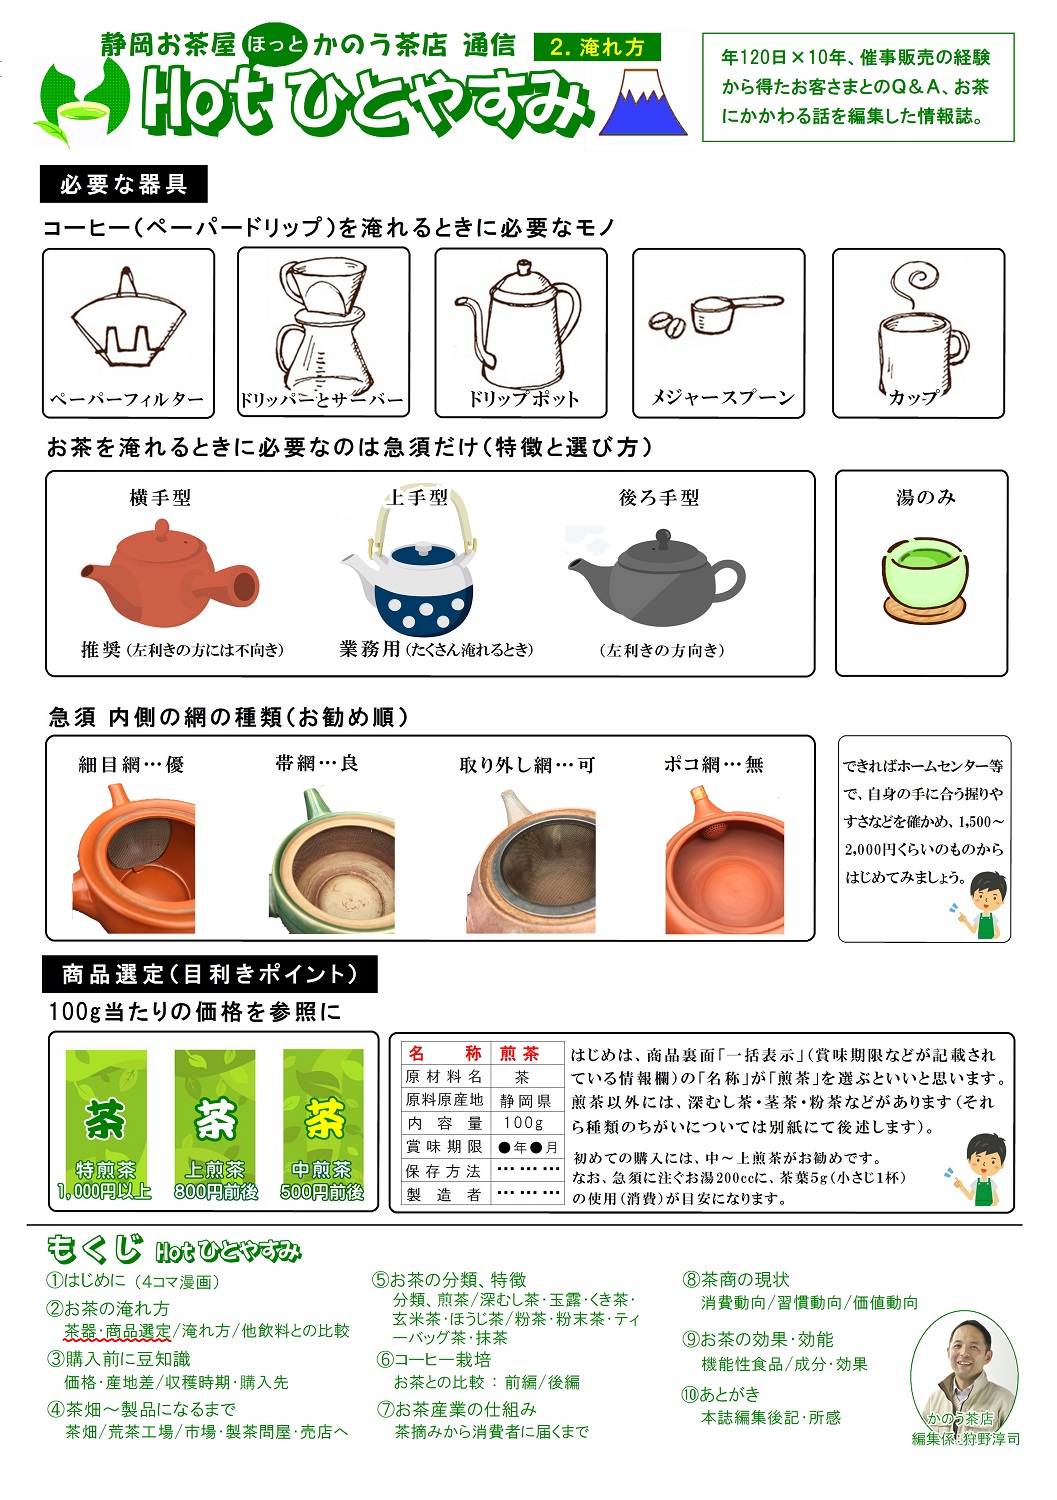 (2)お茶の淹れ方(茶器･商品選定)